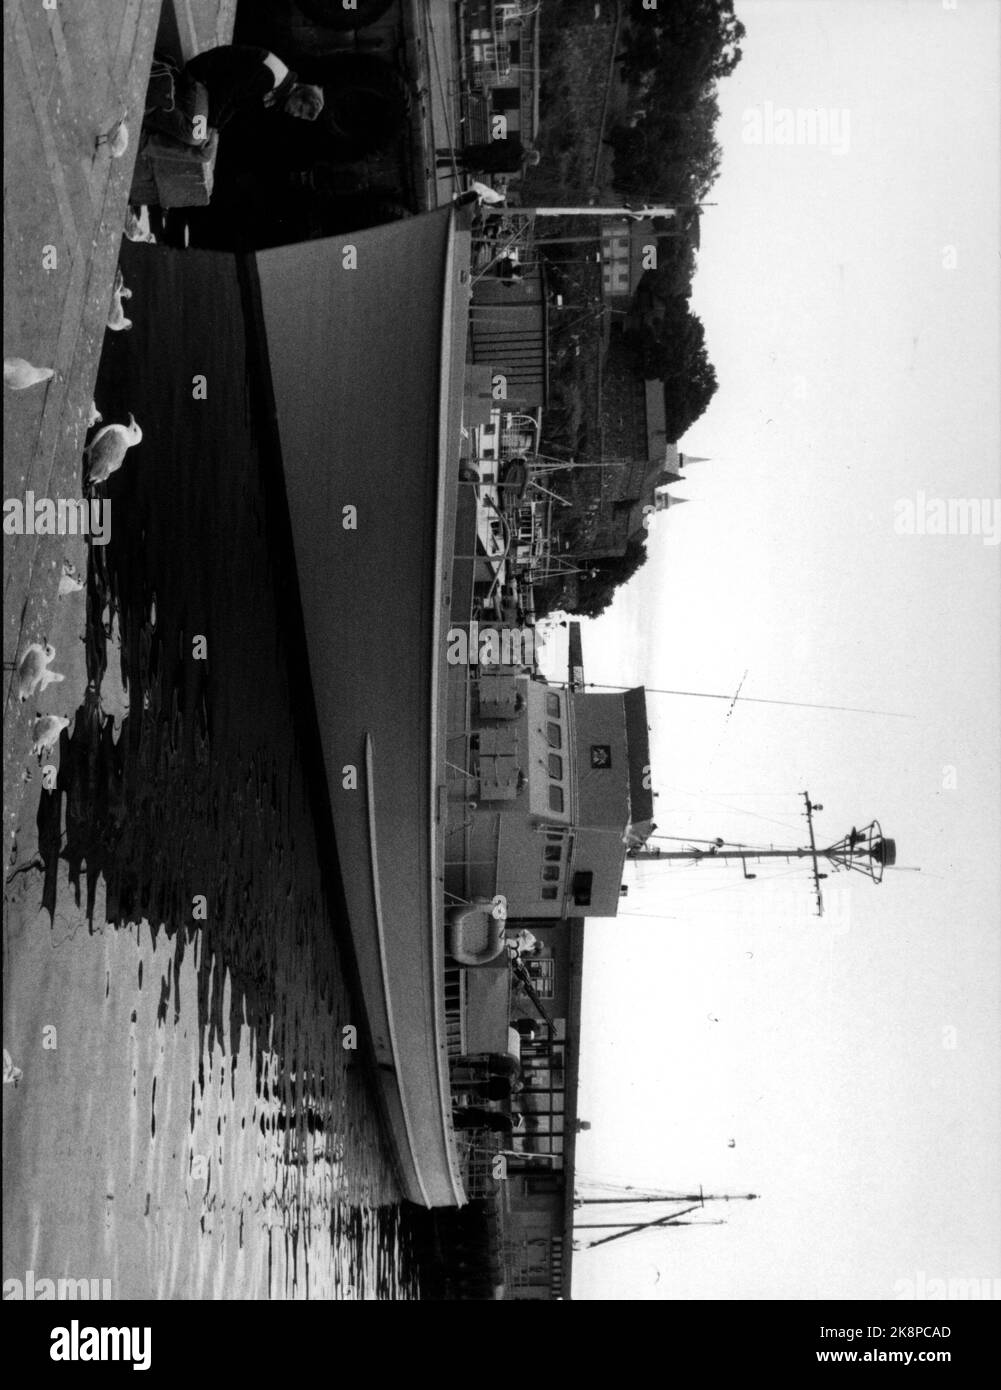 19870806  U-BÅTJAGEREN 'HITRA' i OSLO. En av 'Shetlandsskutene'.   Den 112 fot lange og 125 tonn tunge ubåtjageren er i dag det eneste  marinefartøy som Norge har igjen fra krigen. Den var en av tre små ubåtjagere som USA ga til Norge i 1943 for å effektivisere den illegale  farten mellom Shetland og Norge. Tidligere opererte Shetlandsgjengen med  vanlige fiskeskøyter, og tapene var store.    Fartøyet ble ferdig restaurert ved Oma Båtbyggeri i Leirvik i vår, og vil nå fungere som et flytende museum (ref. NTB tekst).   Foto: Bjørn Sigurdsøn - - Bildet er ca 11 MB - - Stock Photo